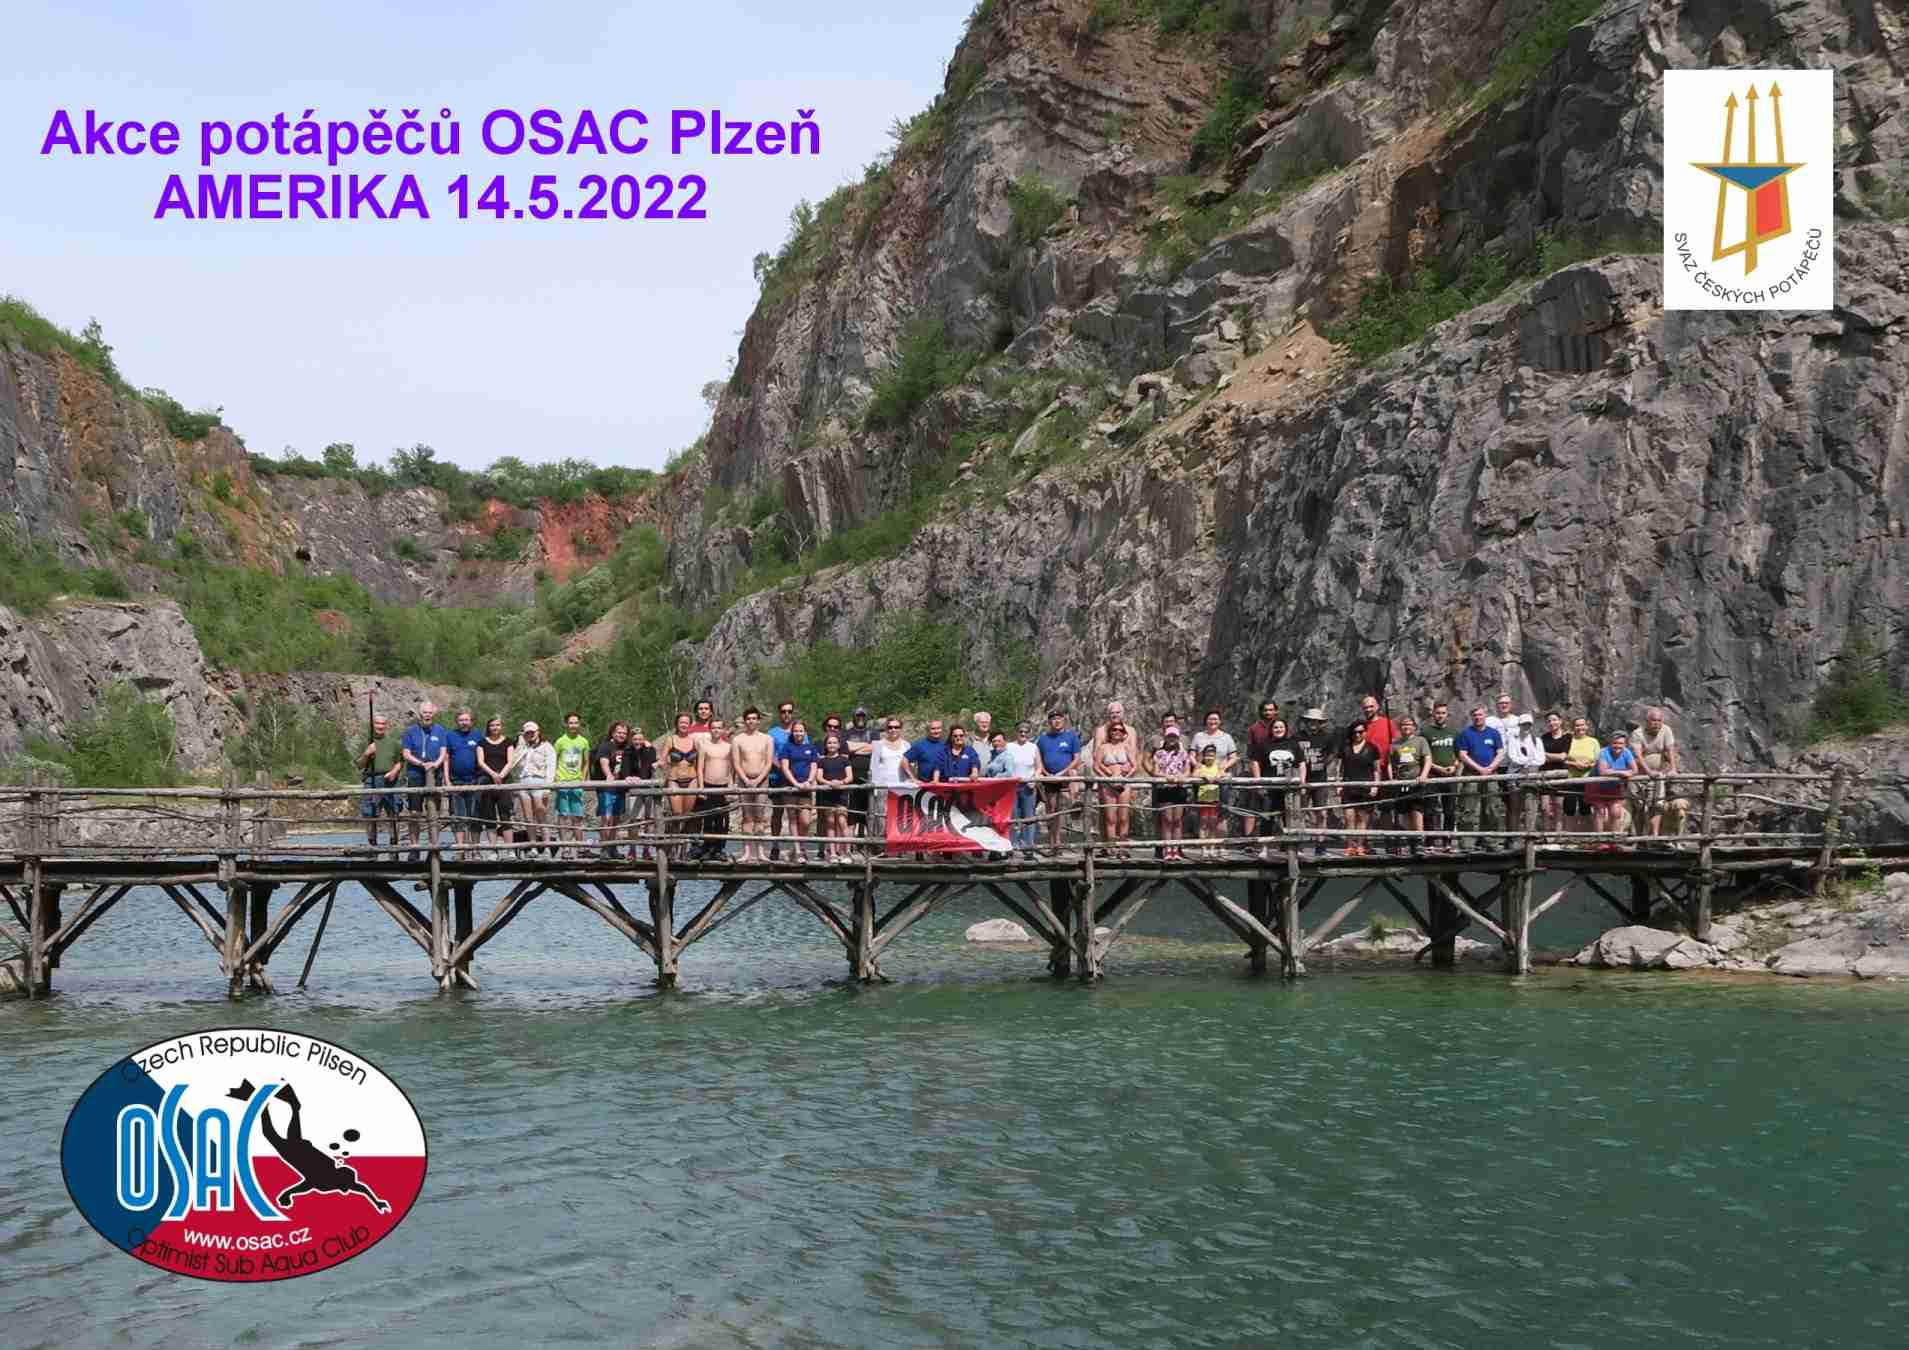 Přečtete si více ze článku Krásná slunečná sobota potápěčů klubu OSAC Plzeň na Americe 14.5.2022